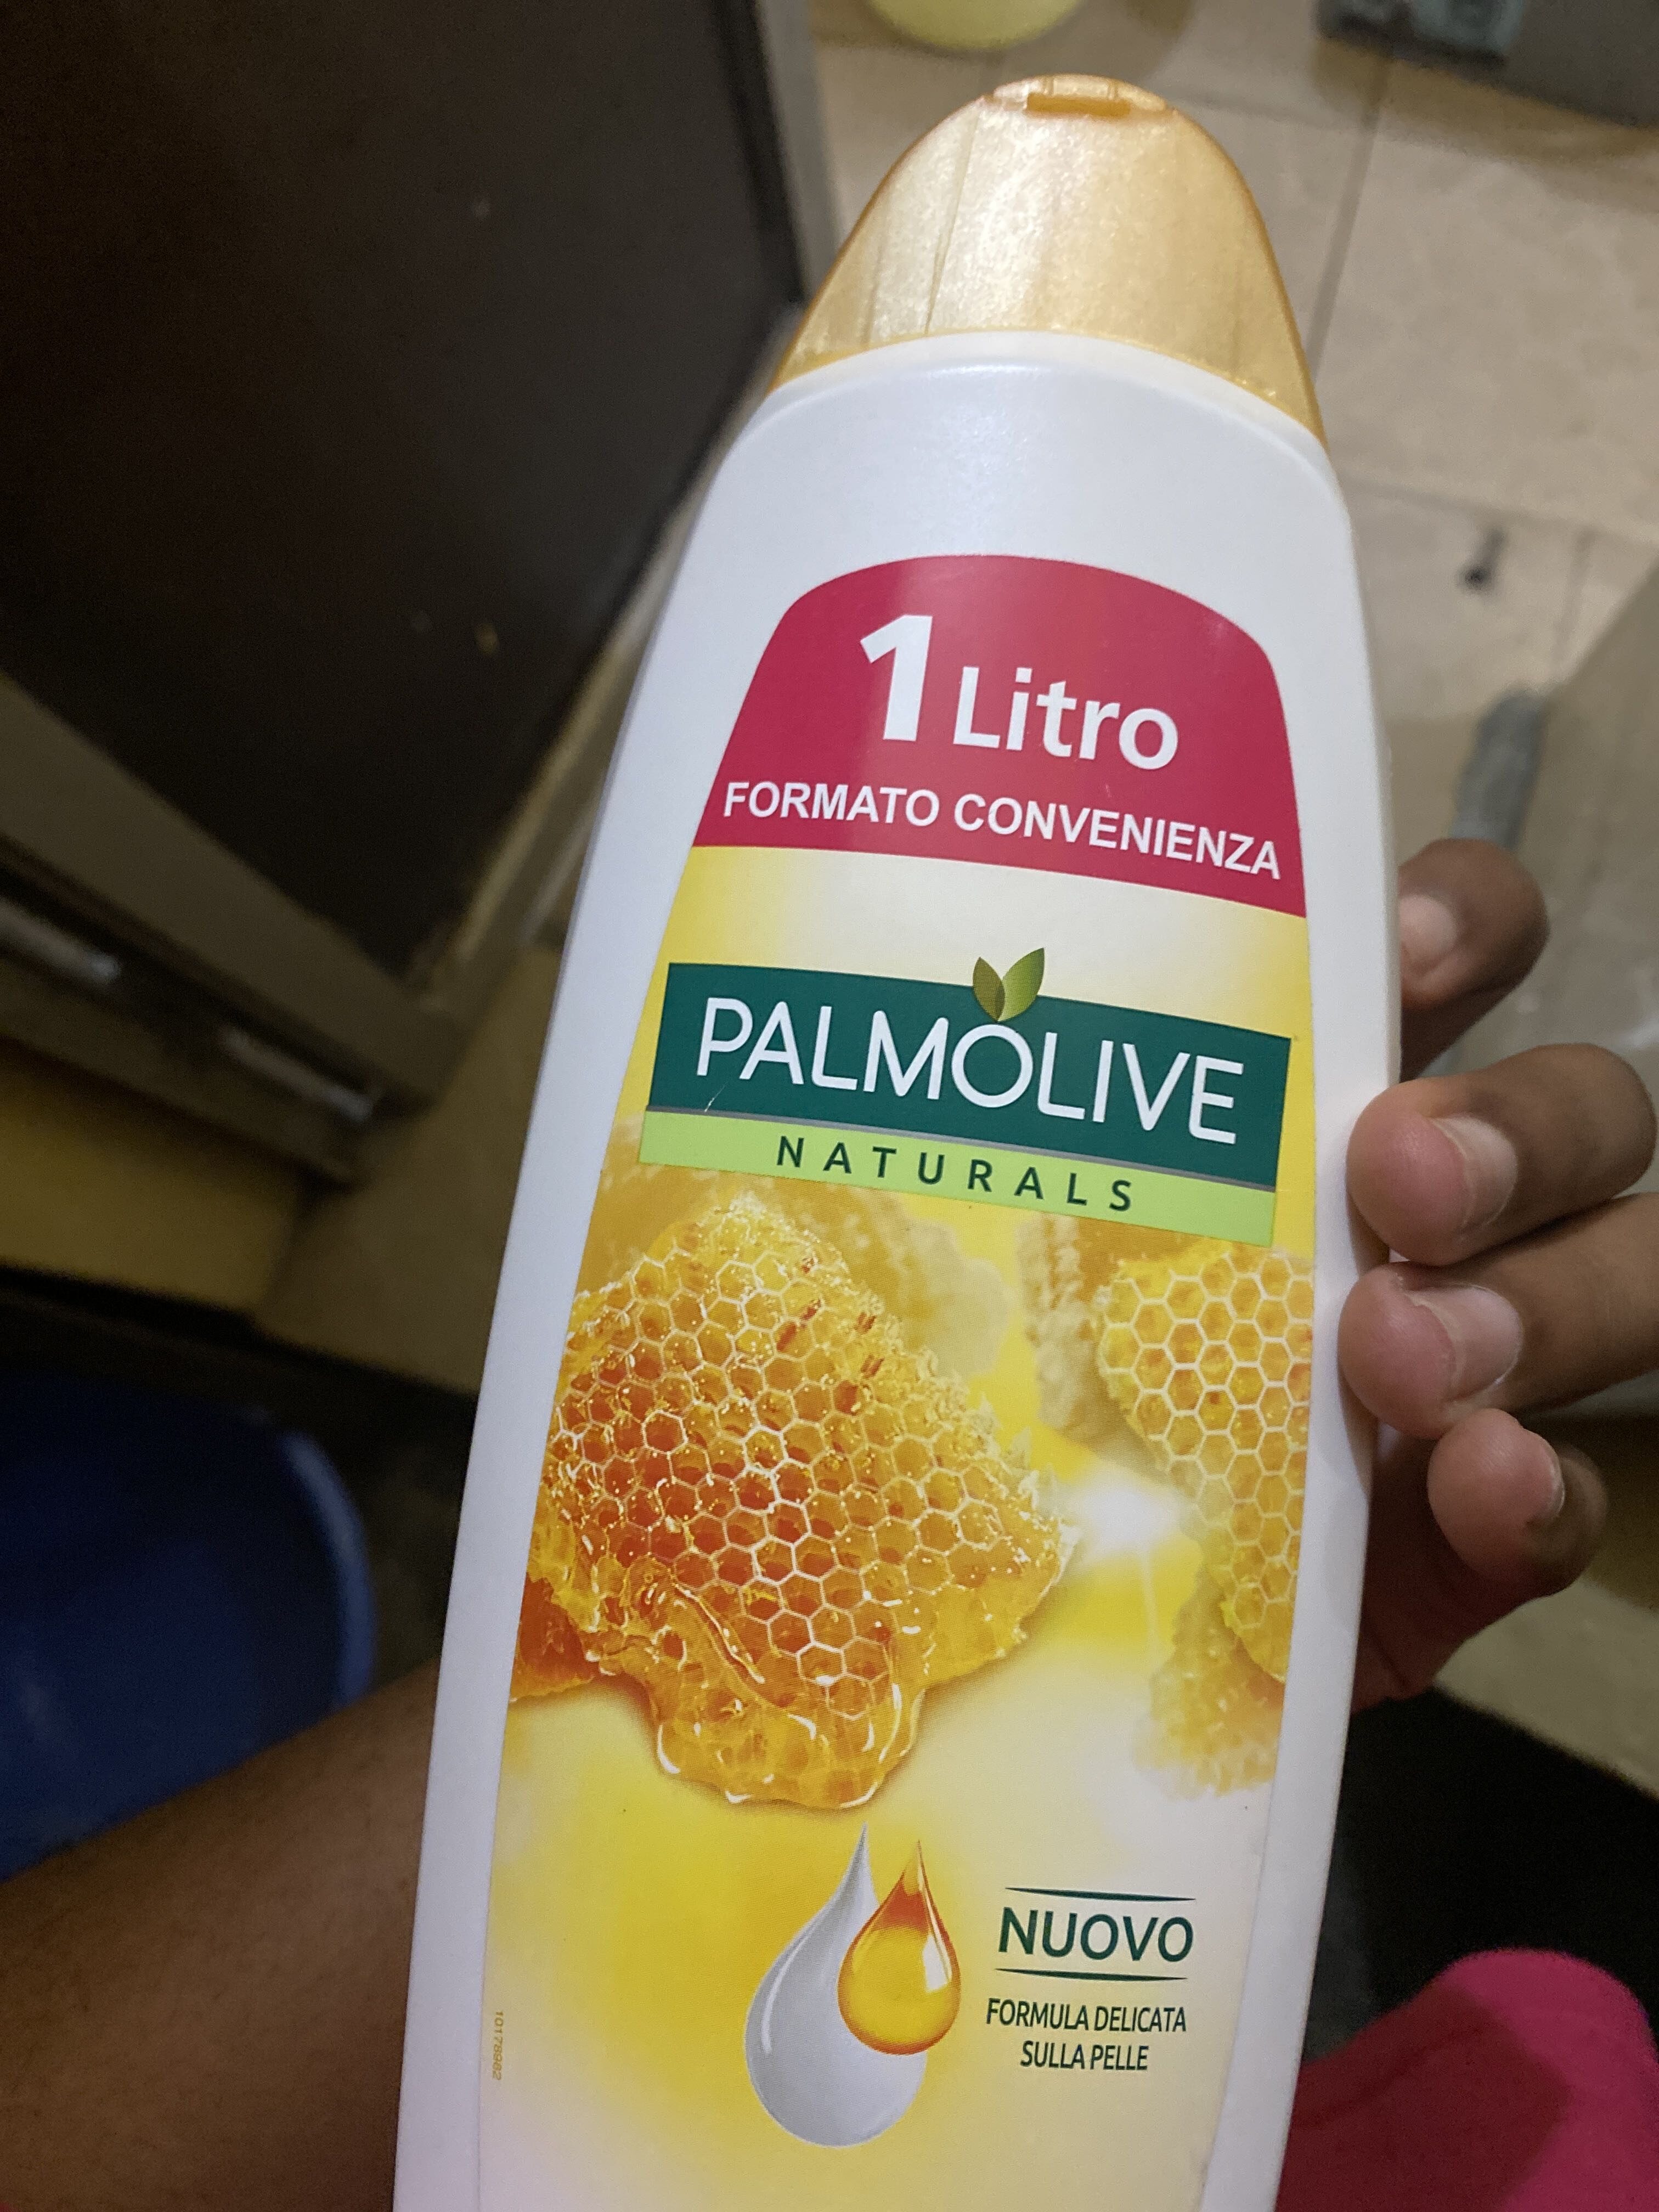 Palm olive - Produkt - en